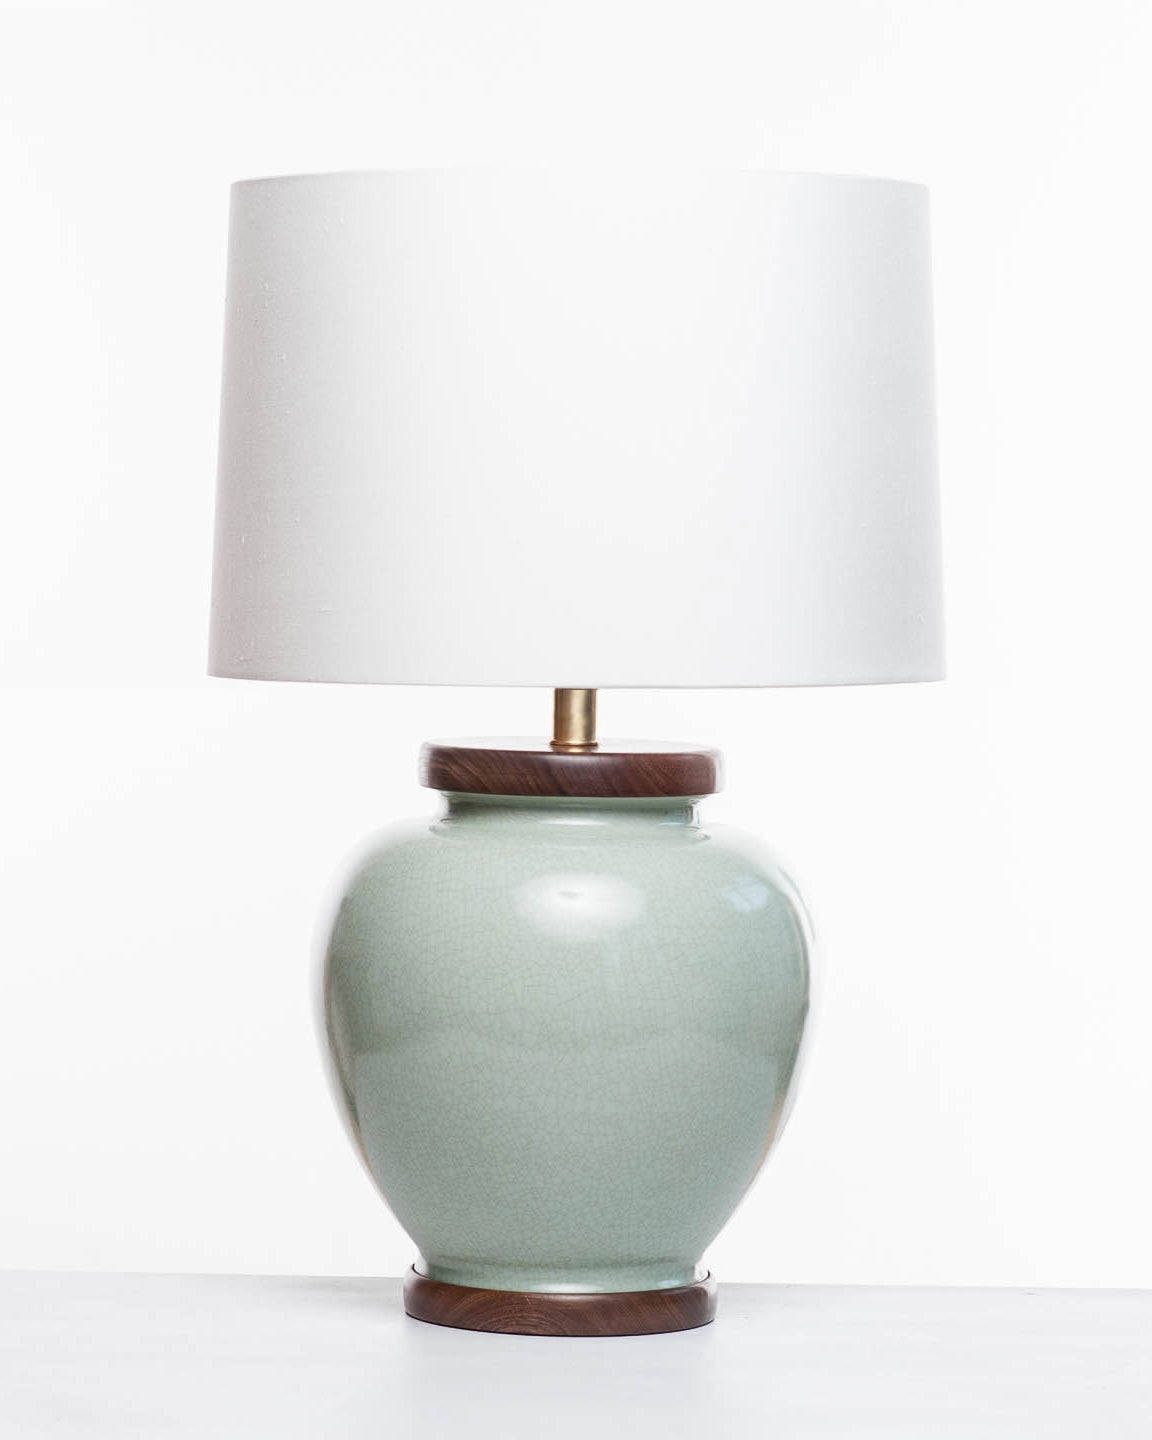 Lawrence & Scott Luca Porcelain Lamp in Celadon Crackle with Walnut Base (Sample Sale)